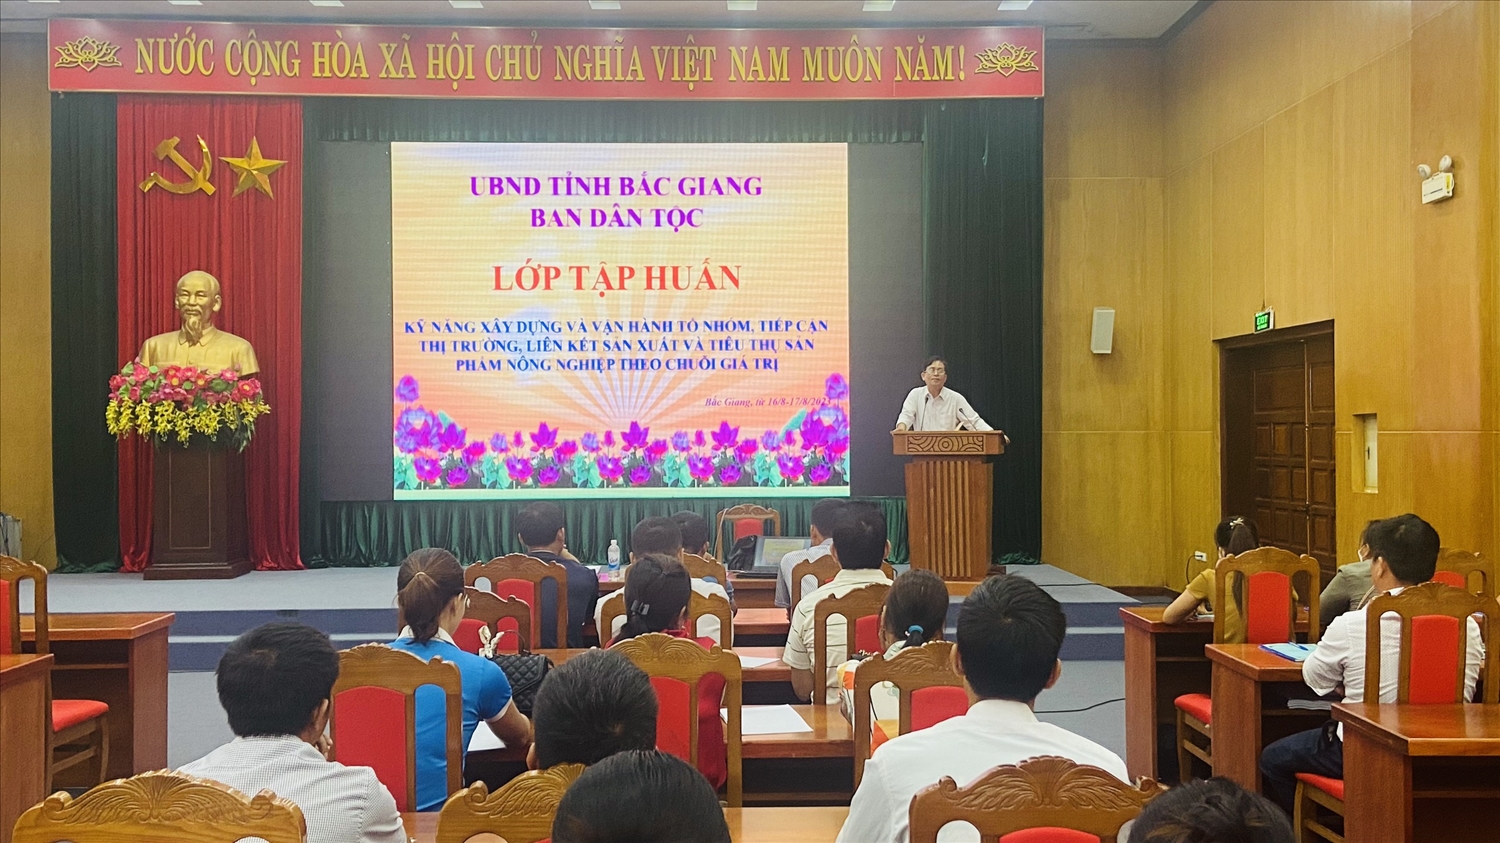 Ông Nhữ Văn Nam, Phó trưởng Ban Dân tộc tỉnh Bắc Giang phát biểu tại lớp tập huấn.